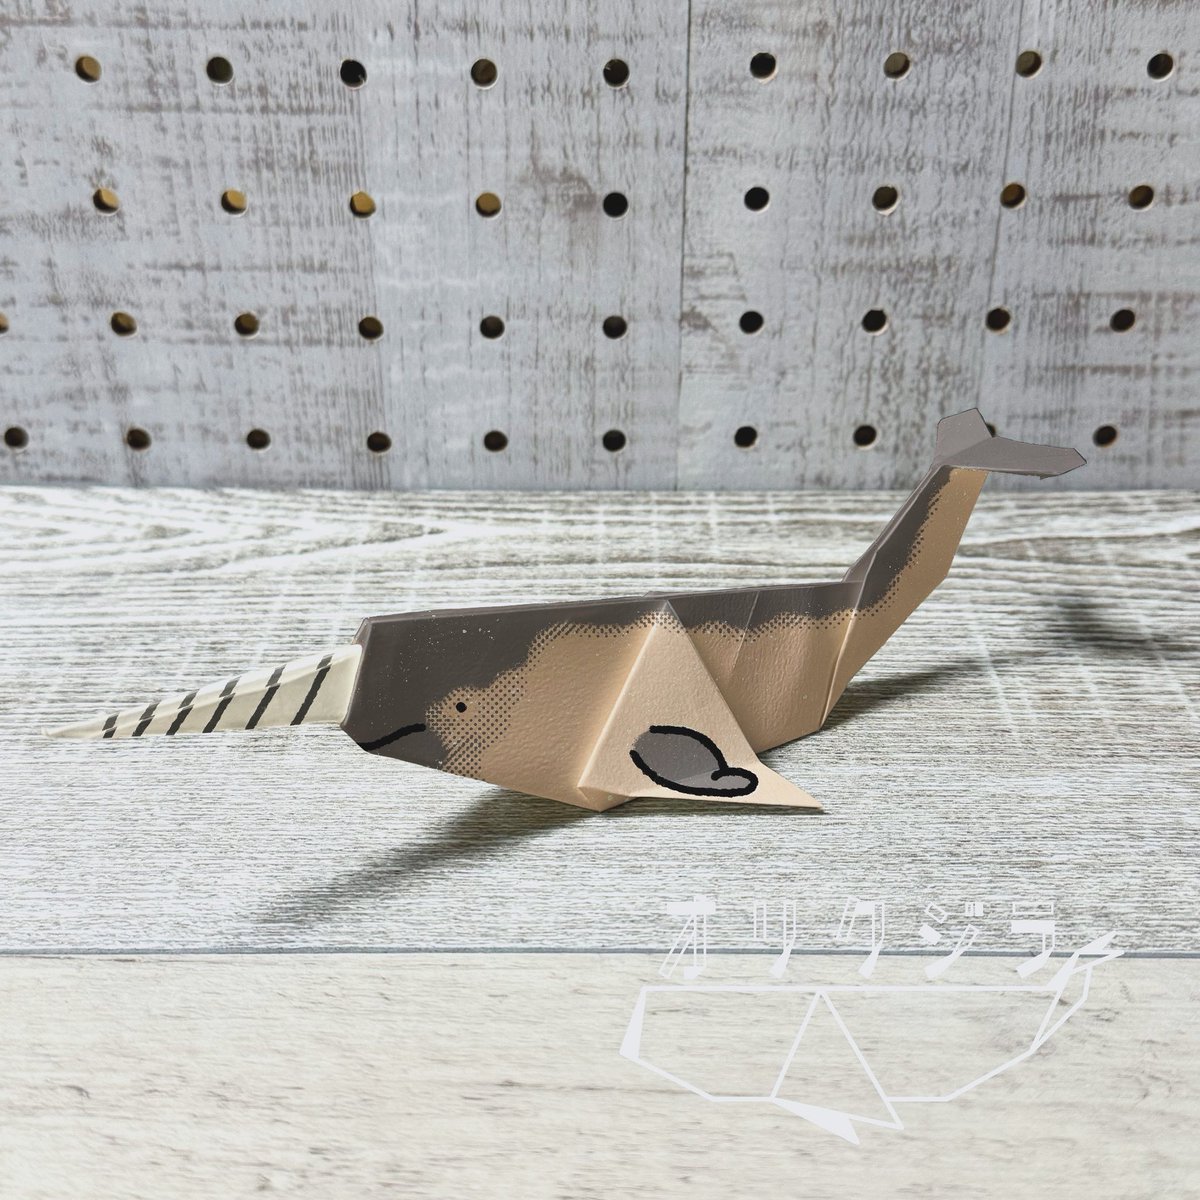 今日はイッカクをオリクジラ🐋
しっぽもイッカカらしくしました✨

#オリクジラ
#オリガミ
#折り紙
#origami
#あらたひとむ
#クジラ
#イッカク
#ペーパーアート
#ペーパークラフト
#papercrafts